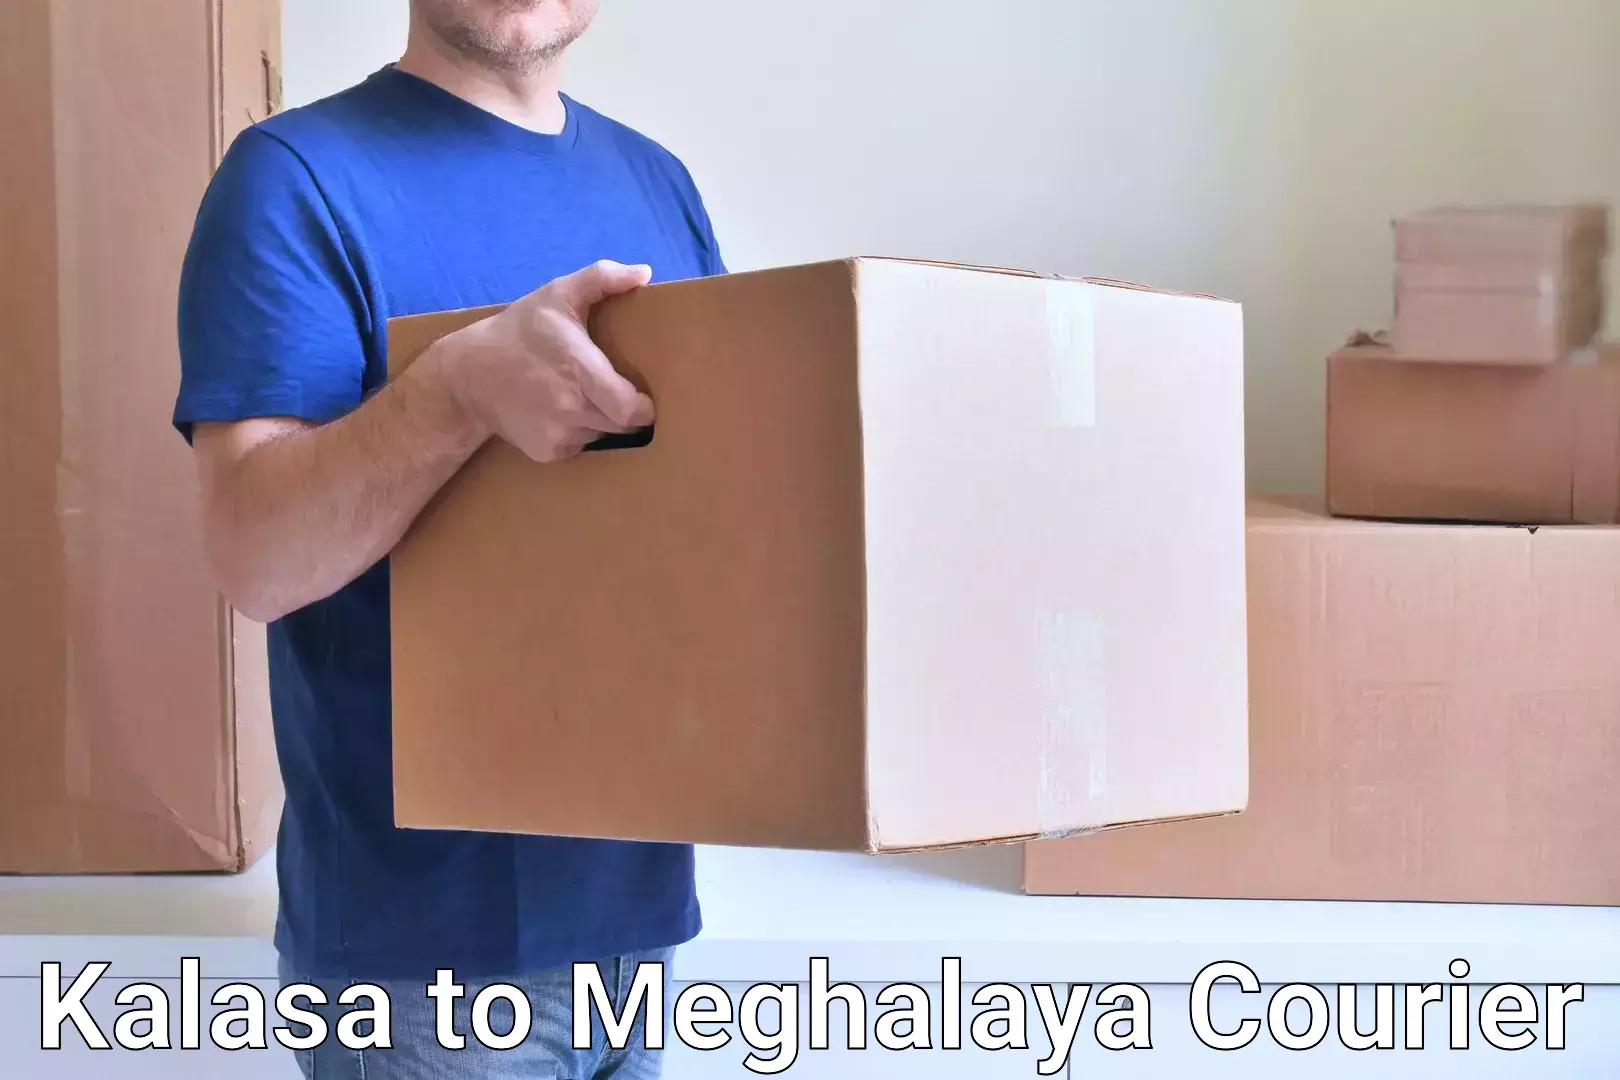 Professional courier handling Kalasa to Meghalaya